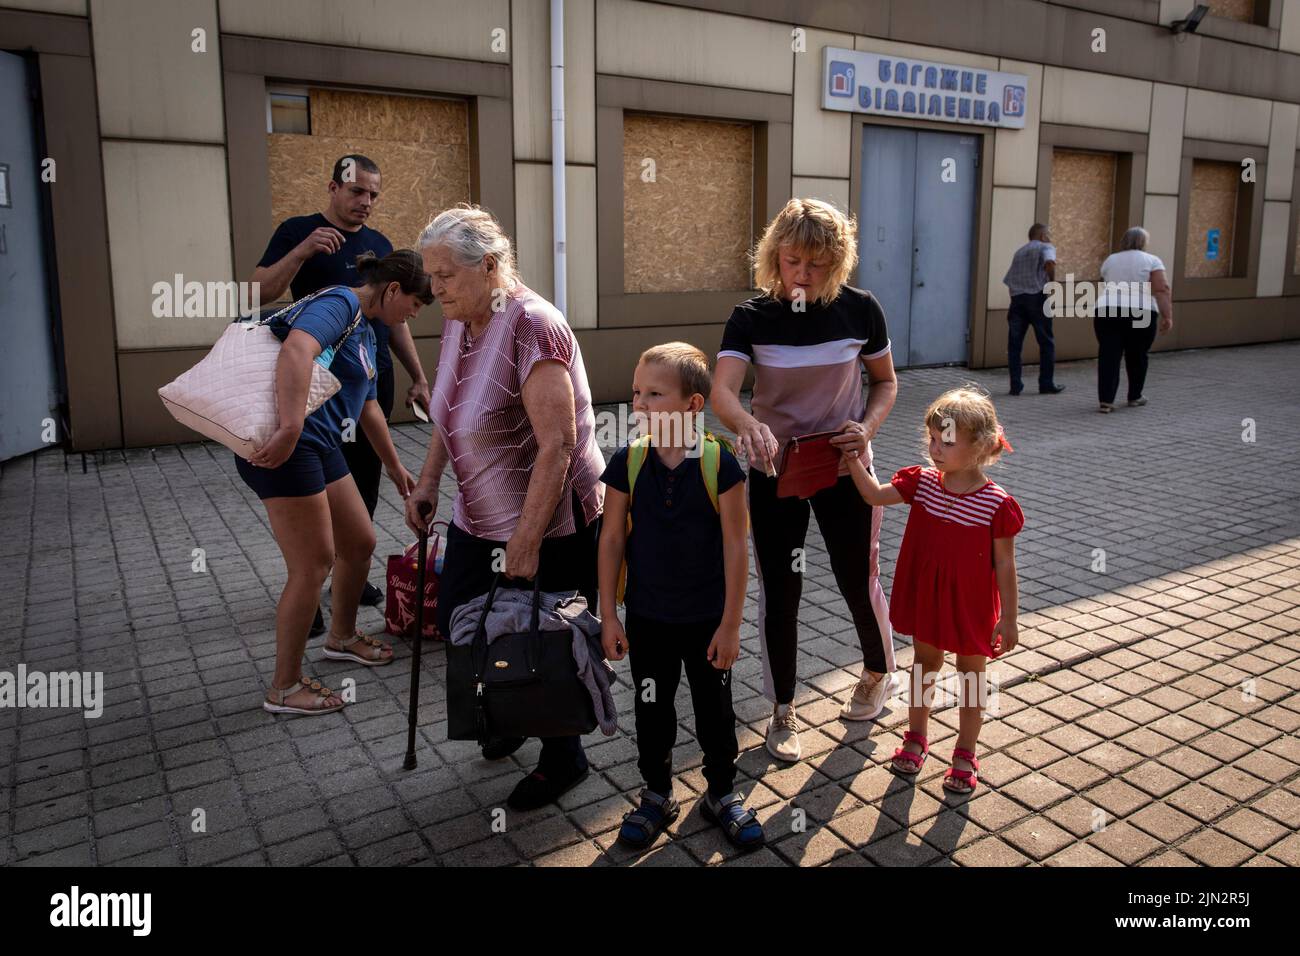 Eine Gruppe von Familien wartet auf den Evakuierungszug am Bahnhof Pokrovsk. Inmitten der intensivierten Kämpfe im östlichen Teil der Ukraine intensiviert die Ostukraine nun ihre zivile Evakuierung, da Millionen ukrainischer Familien aus dem immer näher rückt Krieg evakuiert wurden, da viele von ihnen in den westlichen Teil des Landes verlagert werden.Laut den Vereinten Nationen werden die meisten von ihnen in den Westen des Landes umgesiedelt. Mindestens 12 Millionen Menschen sind seit dem russischen Einmarsch in die Ukraine aus ihrer Heimat geflohen, während sieben Millionen Menschen innerhalb des Landes vertrieben werden. (Foto von Alex Chan Tsz Yuk / SOPA Images/Sipa USA) Stockfoto